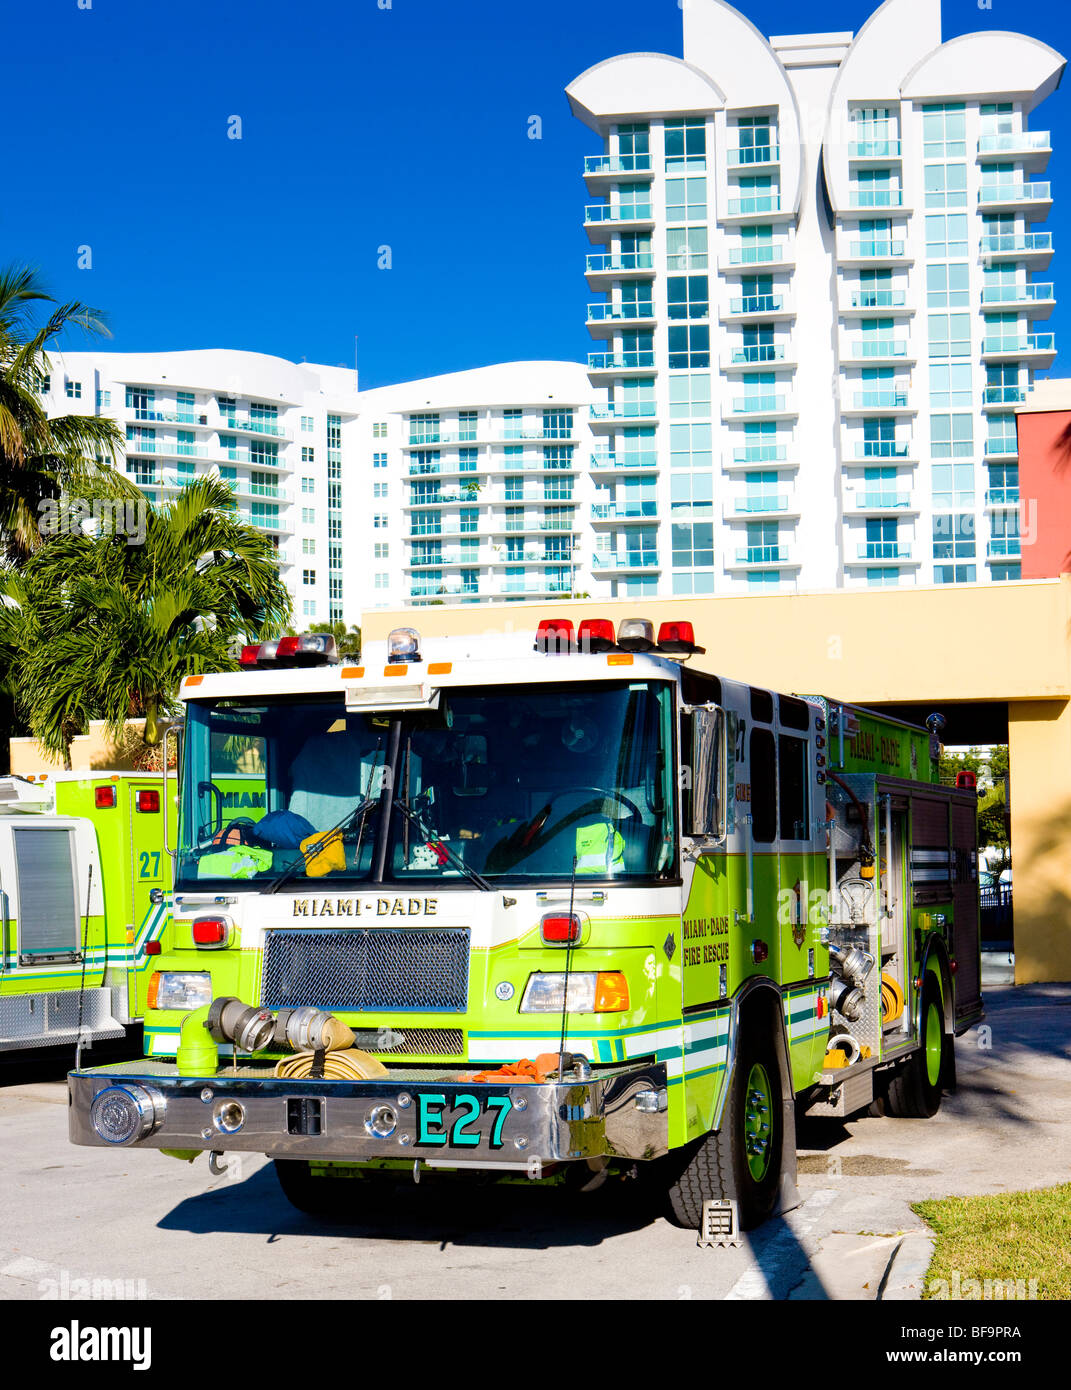 fire engine, Miami, Florida, USA Stock Photo